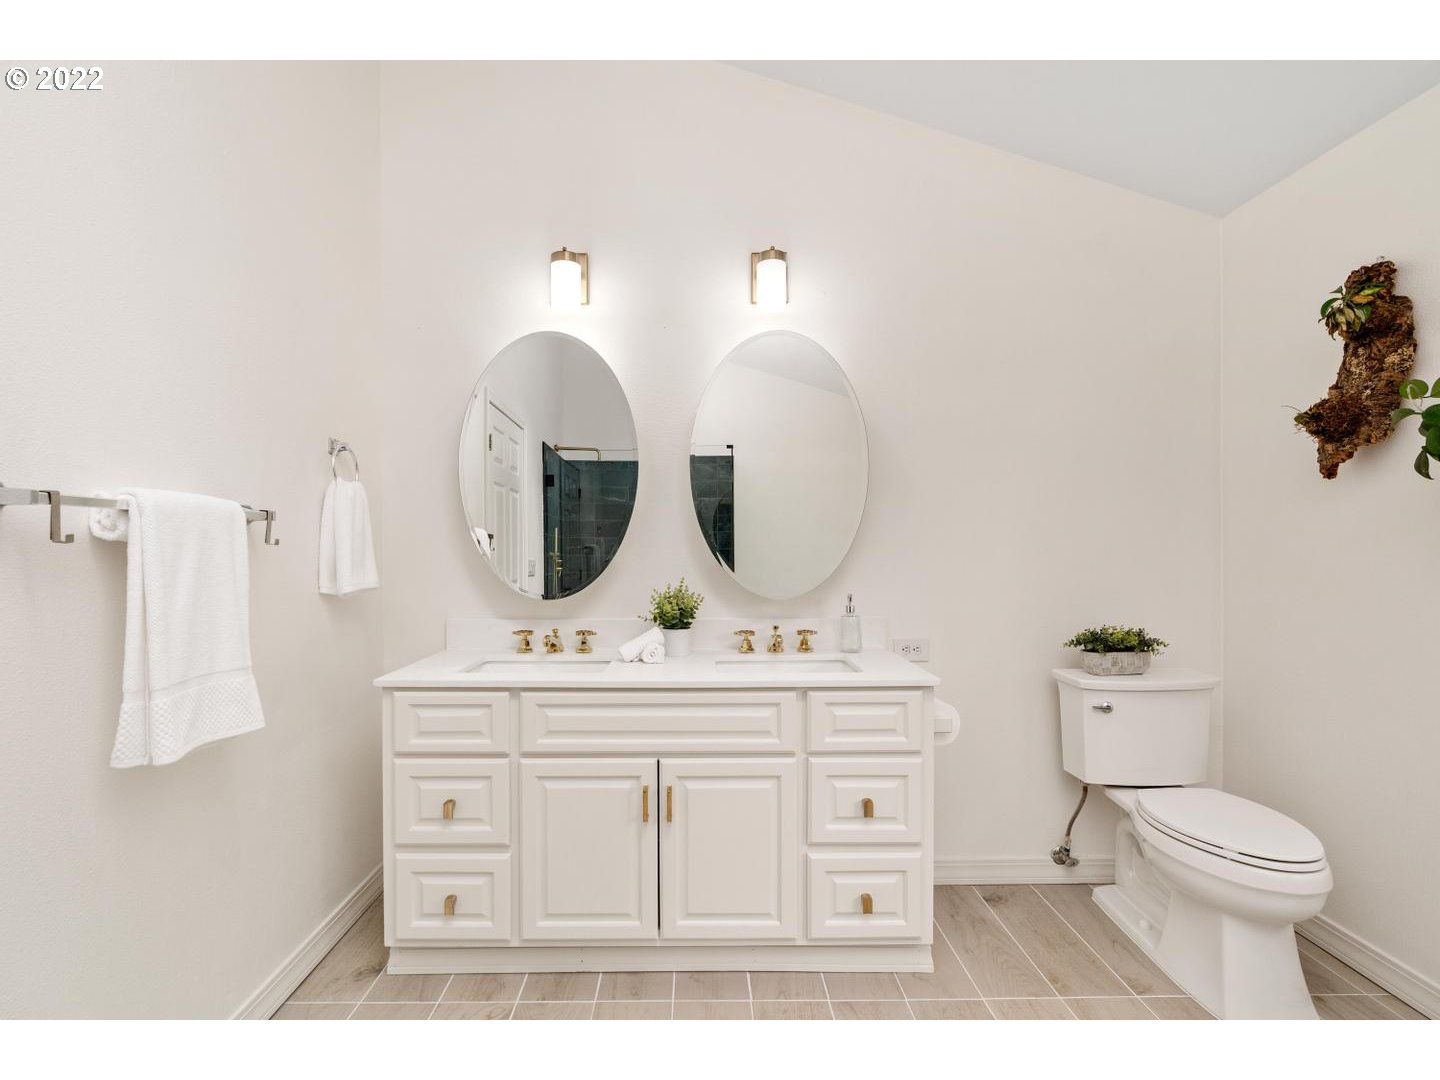 Owner's Suite Bathroom-Double Sinks